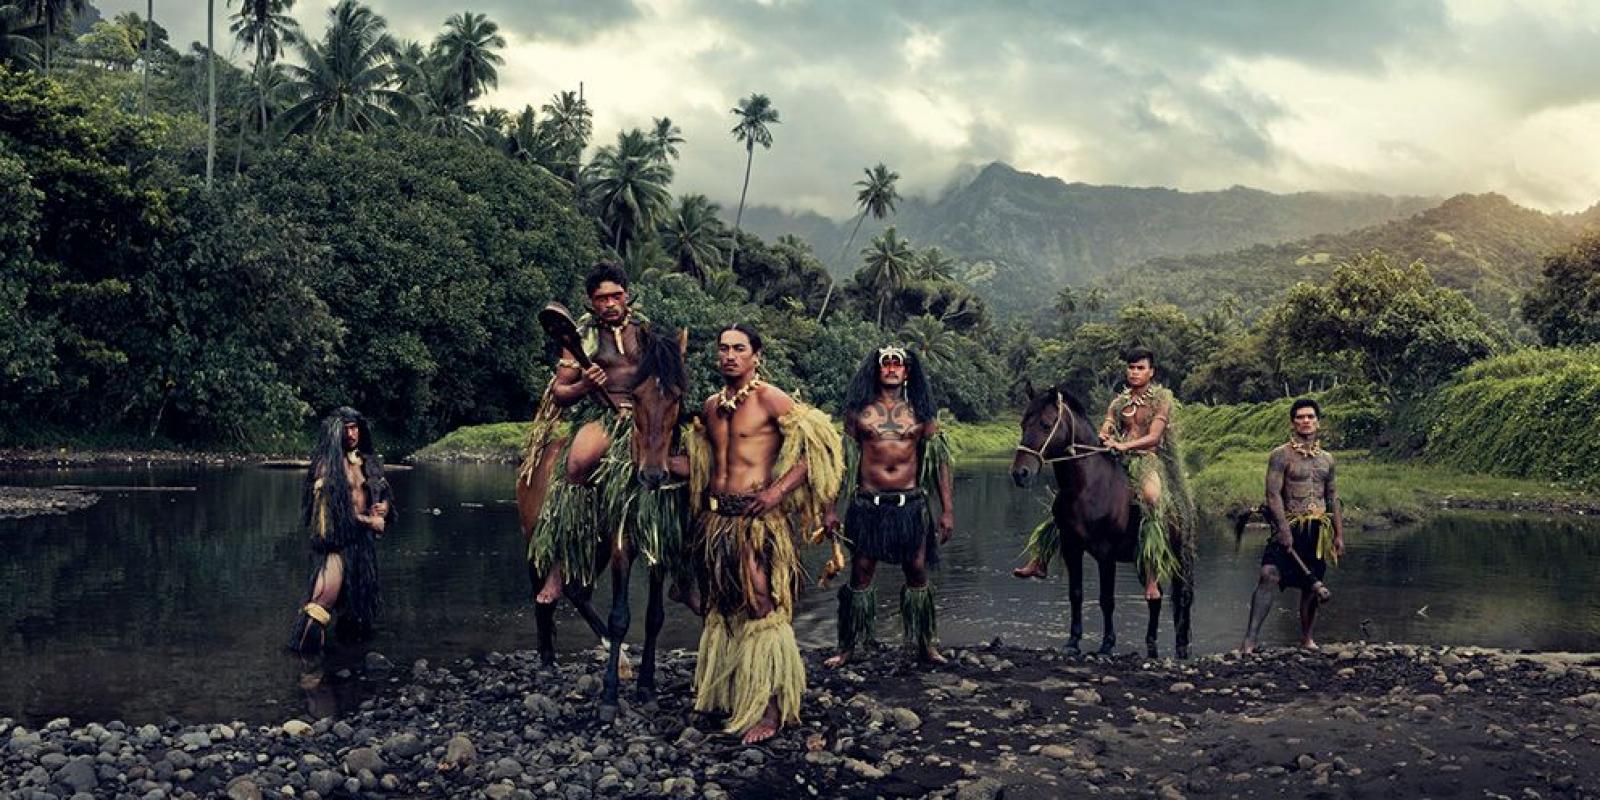 "XXVI 16 Vaioa-Fluss, Atuona, Hiva Oa, Marquesas

Da Jimmy schon seit vielen Jahren von der traditionellen Körperdekoration fasziniert war, war es kein Wunder, dass er schließlich bei den Marquesanern im Norden von Französisch-Polynesien landete und